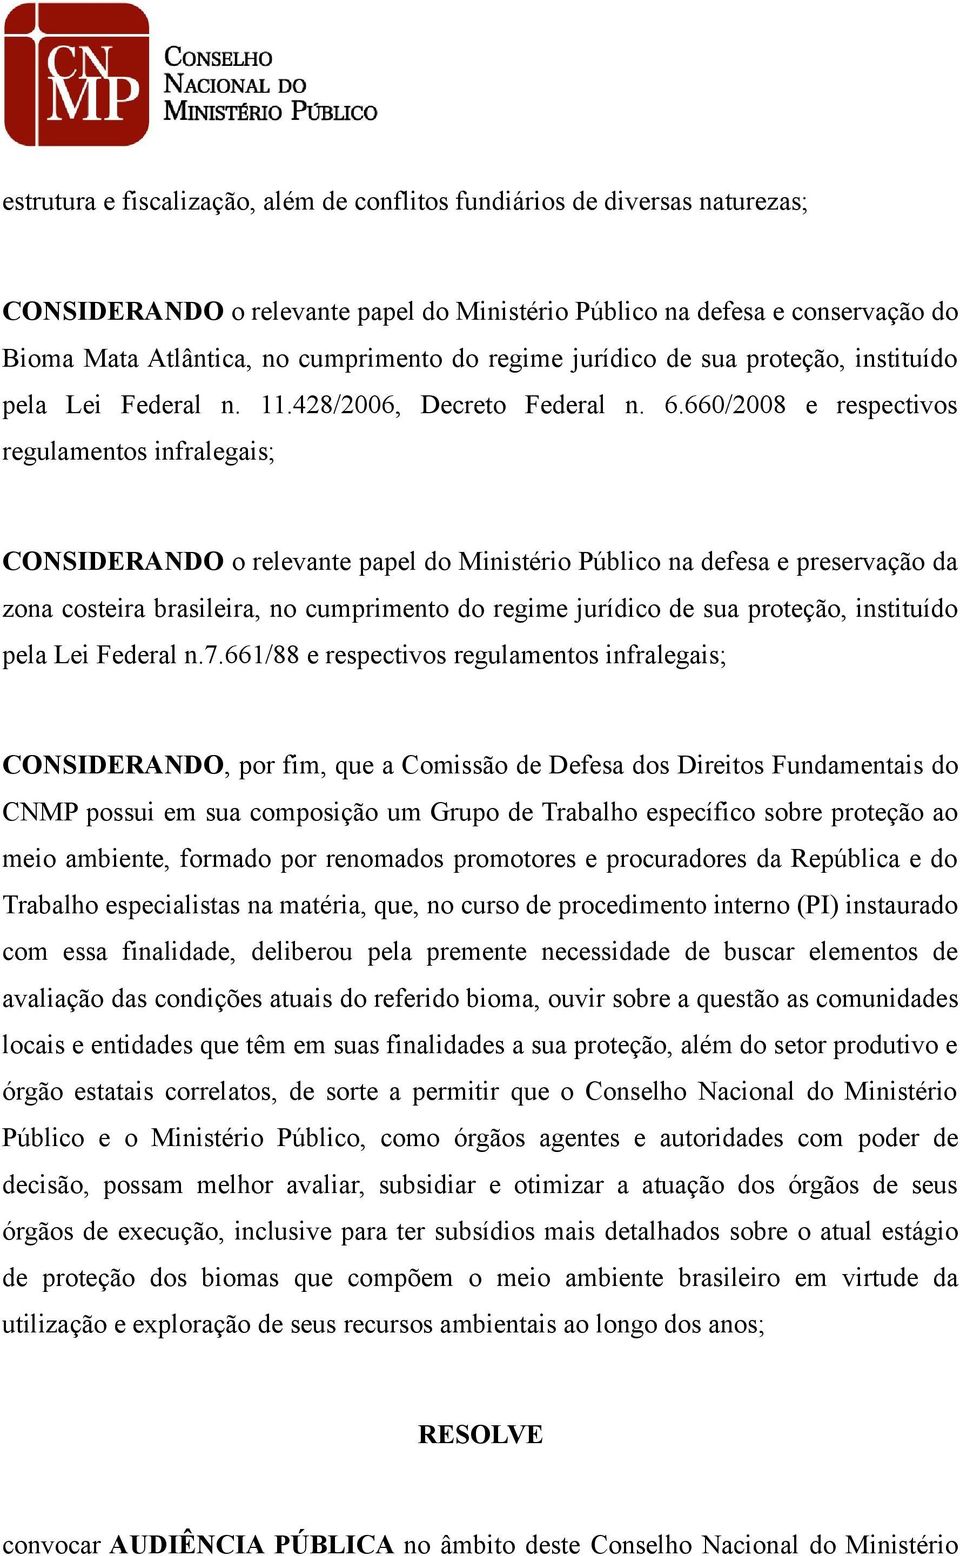 660/2008 e respectivos regulamentos infralegais; CONSIDERANDO o relevante papel do Ministério Público na defesa e preservação da zona costeira brasileira, no cumprimento do regime jurídico de sua